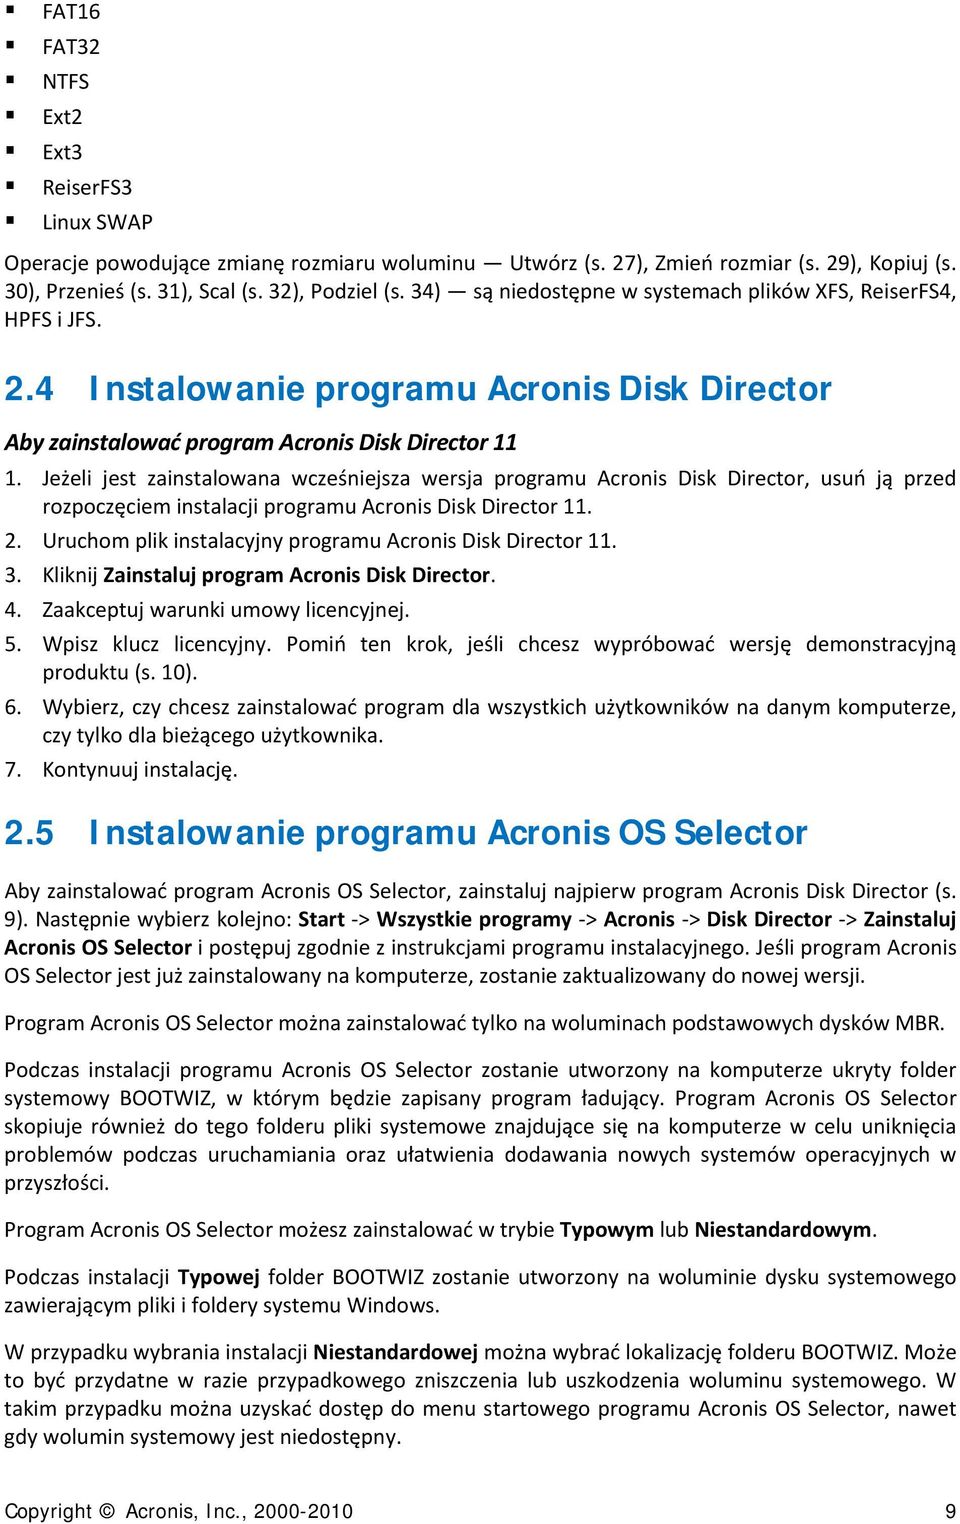 Jeżeli jest zainstalowana wcześniejsza wersja programu Acronis Disk Director, usuń ją przed rozpoczęciem instalacji programu Acronis Disk Director 11. 2.